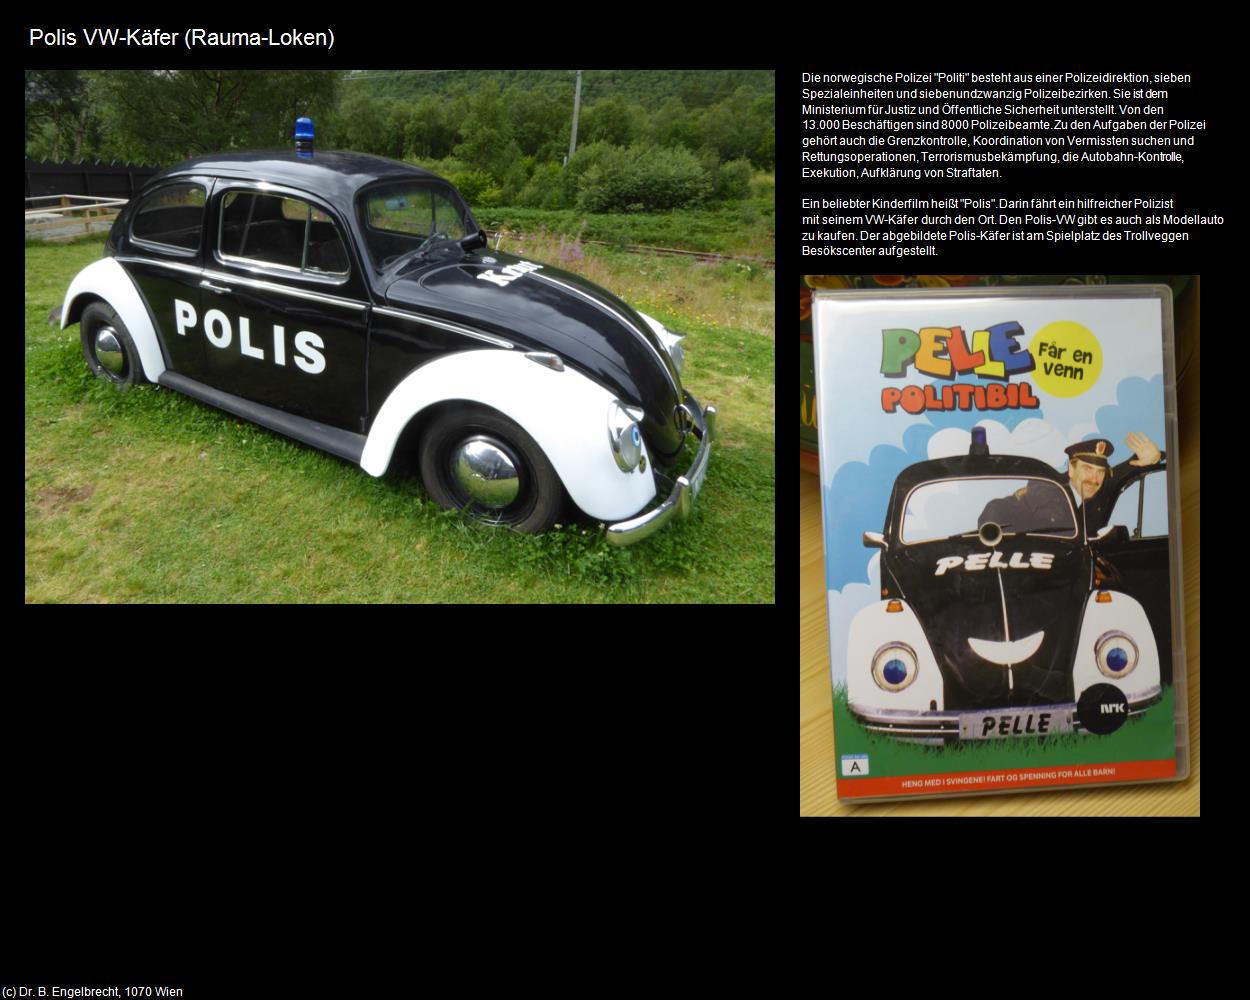 Polis VW-Käfer (Loken bei Rauma) in Kulturatlas-NORWEGEN